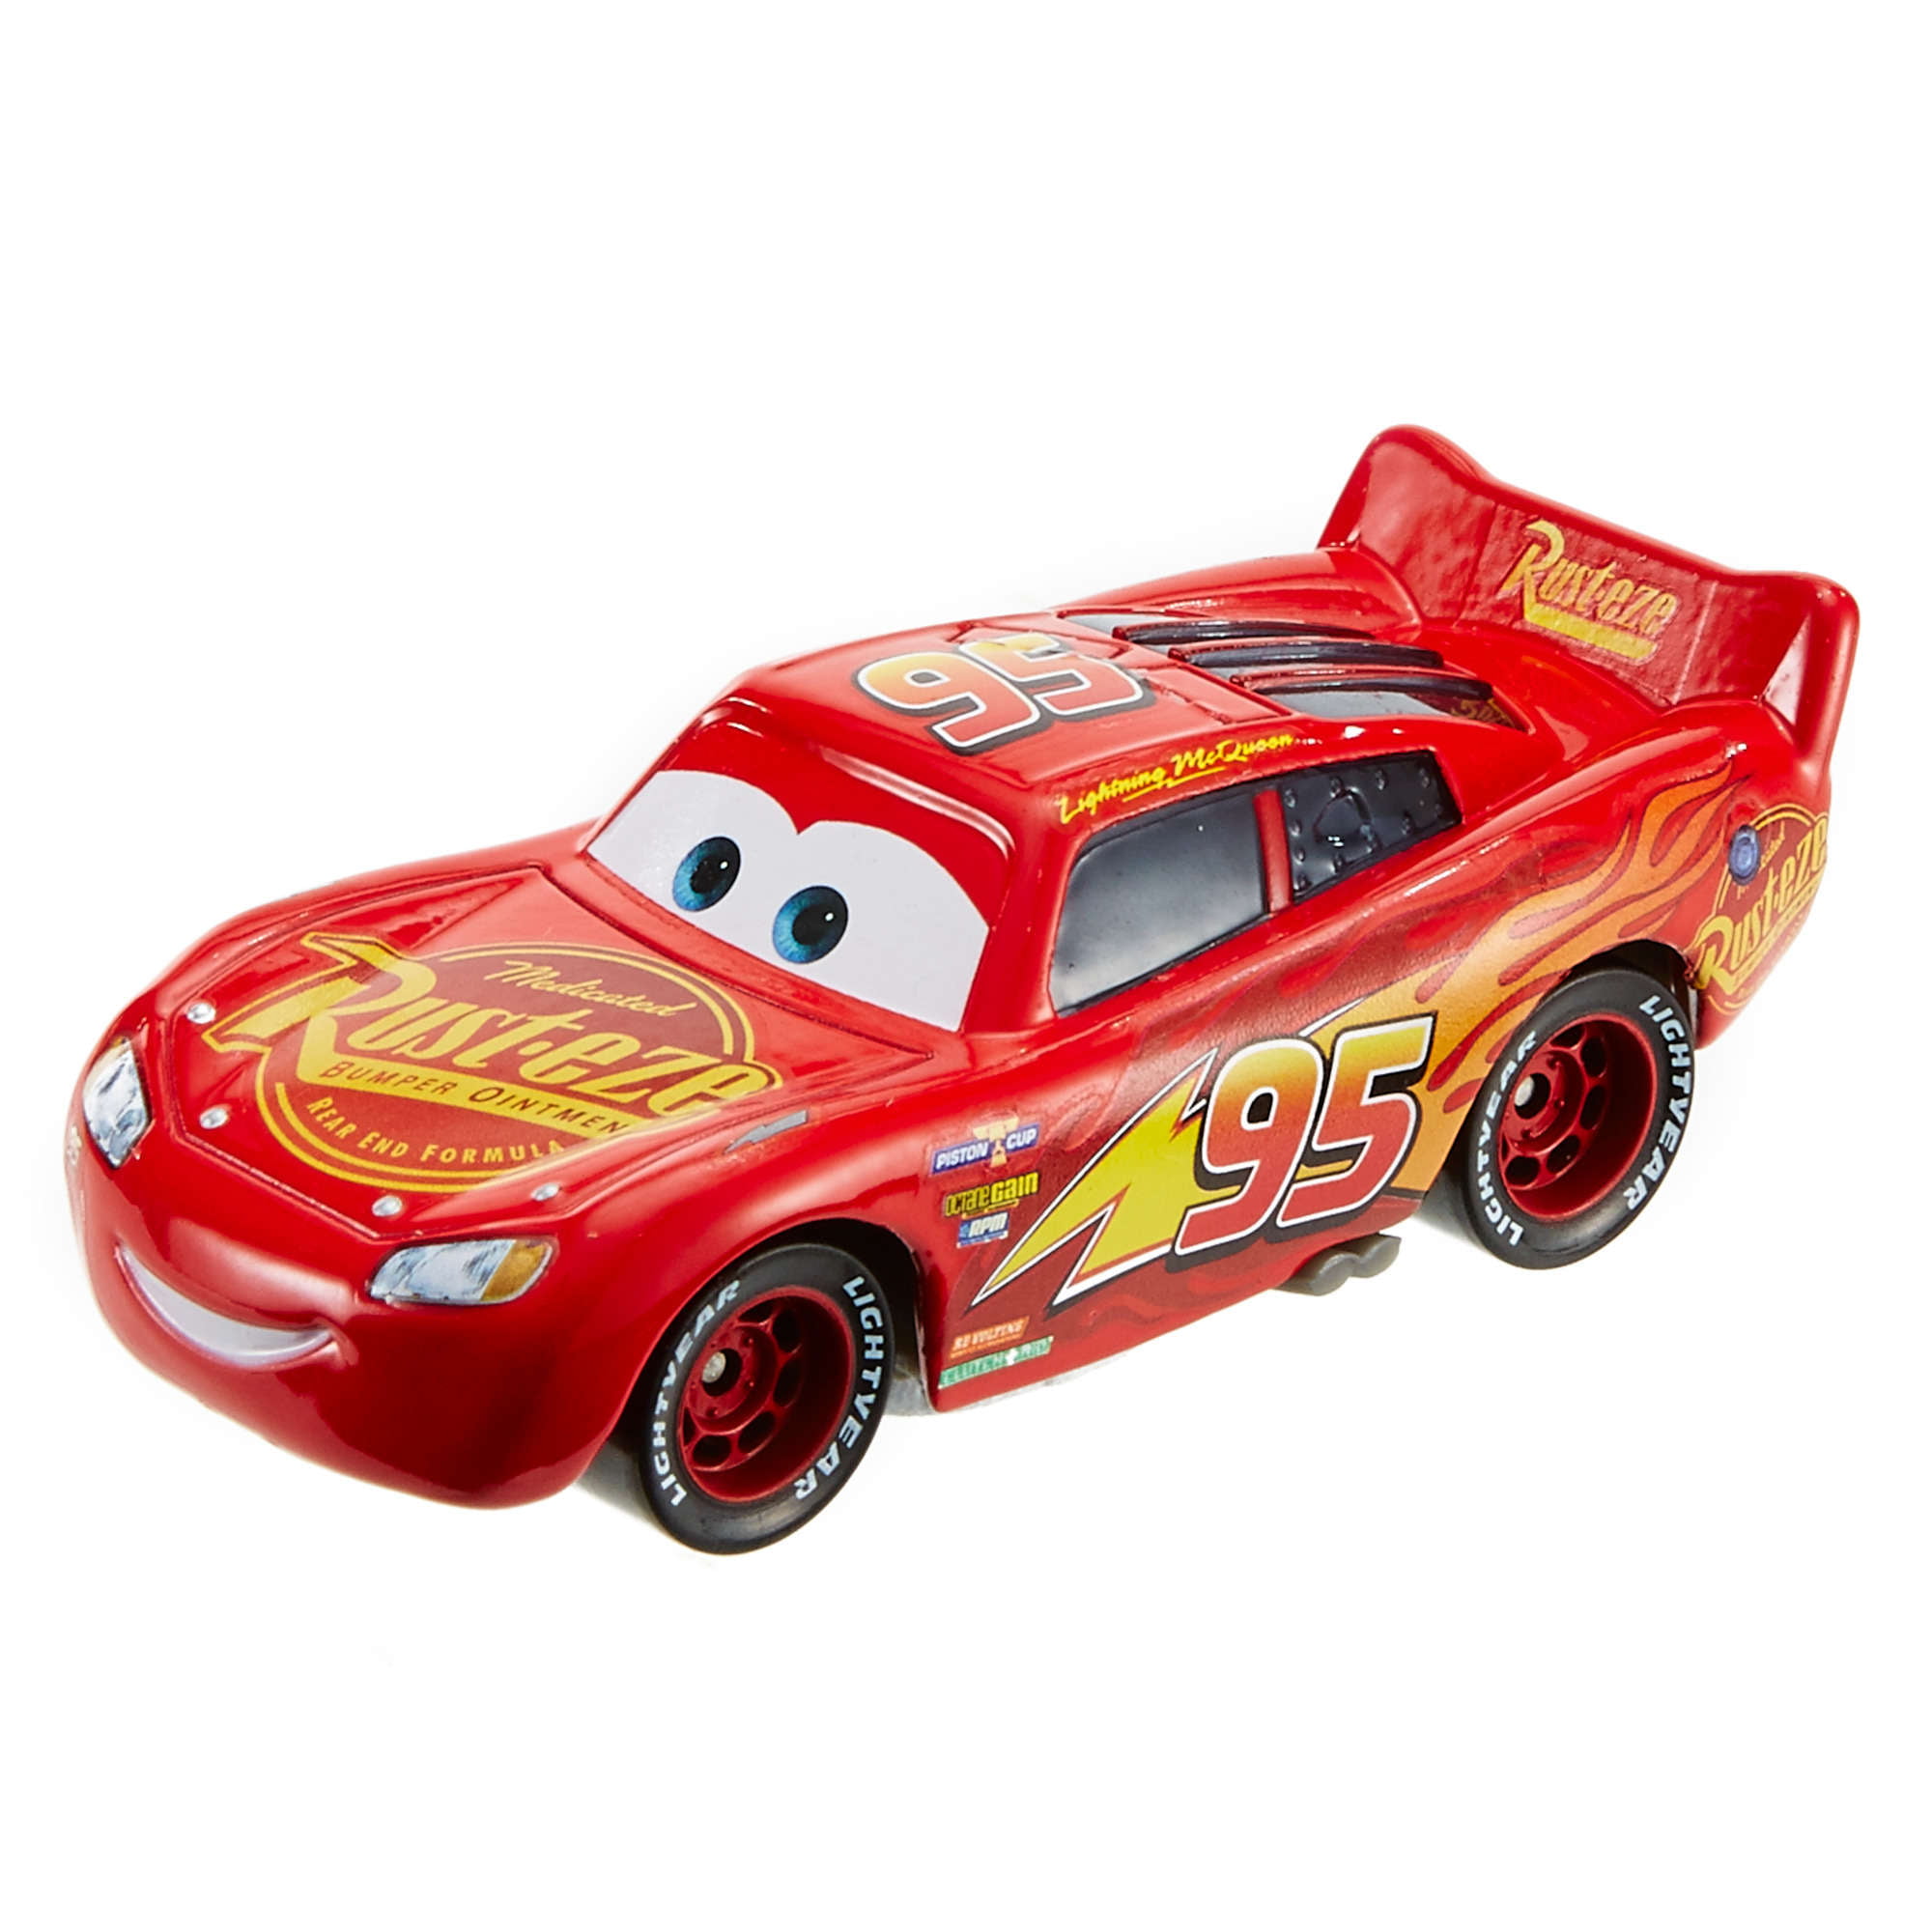 diecast toy car